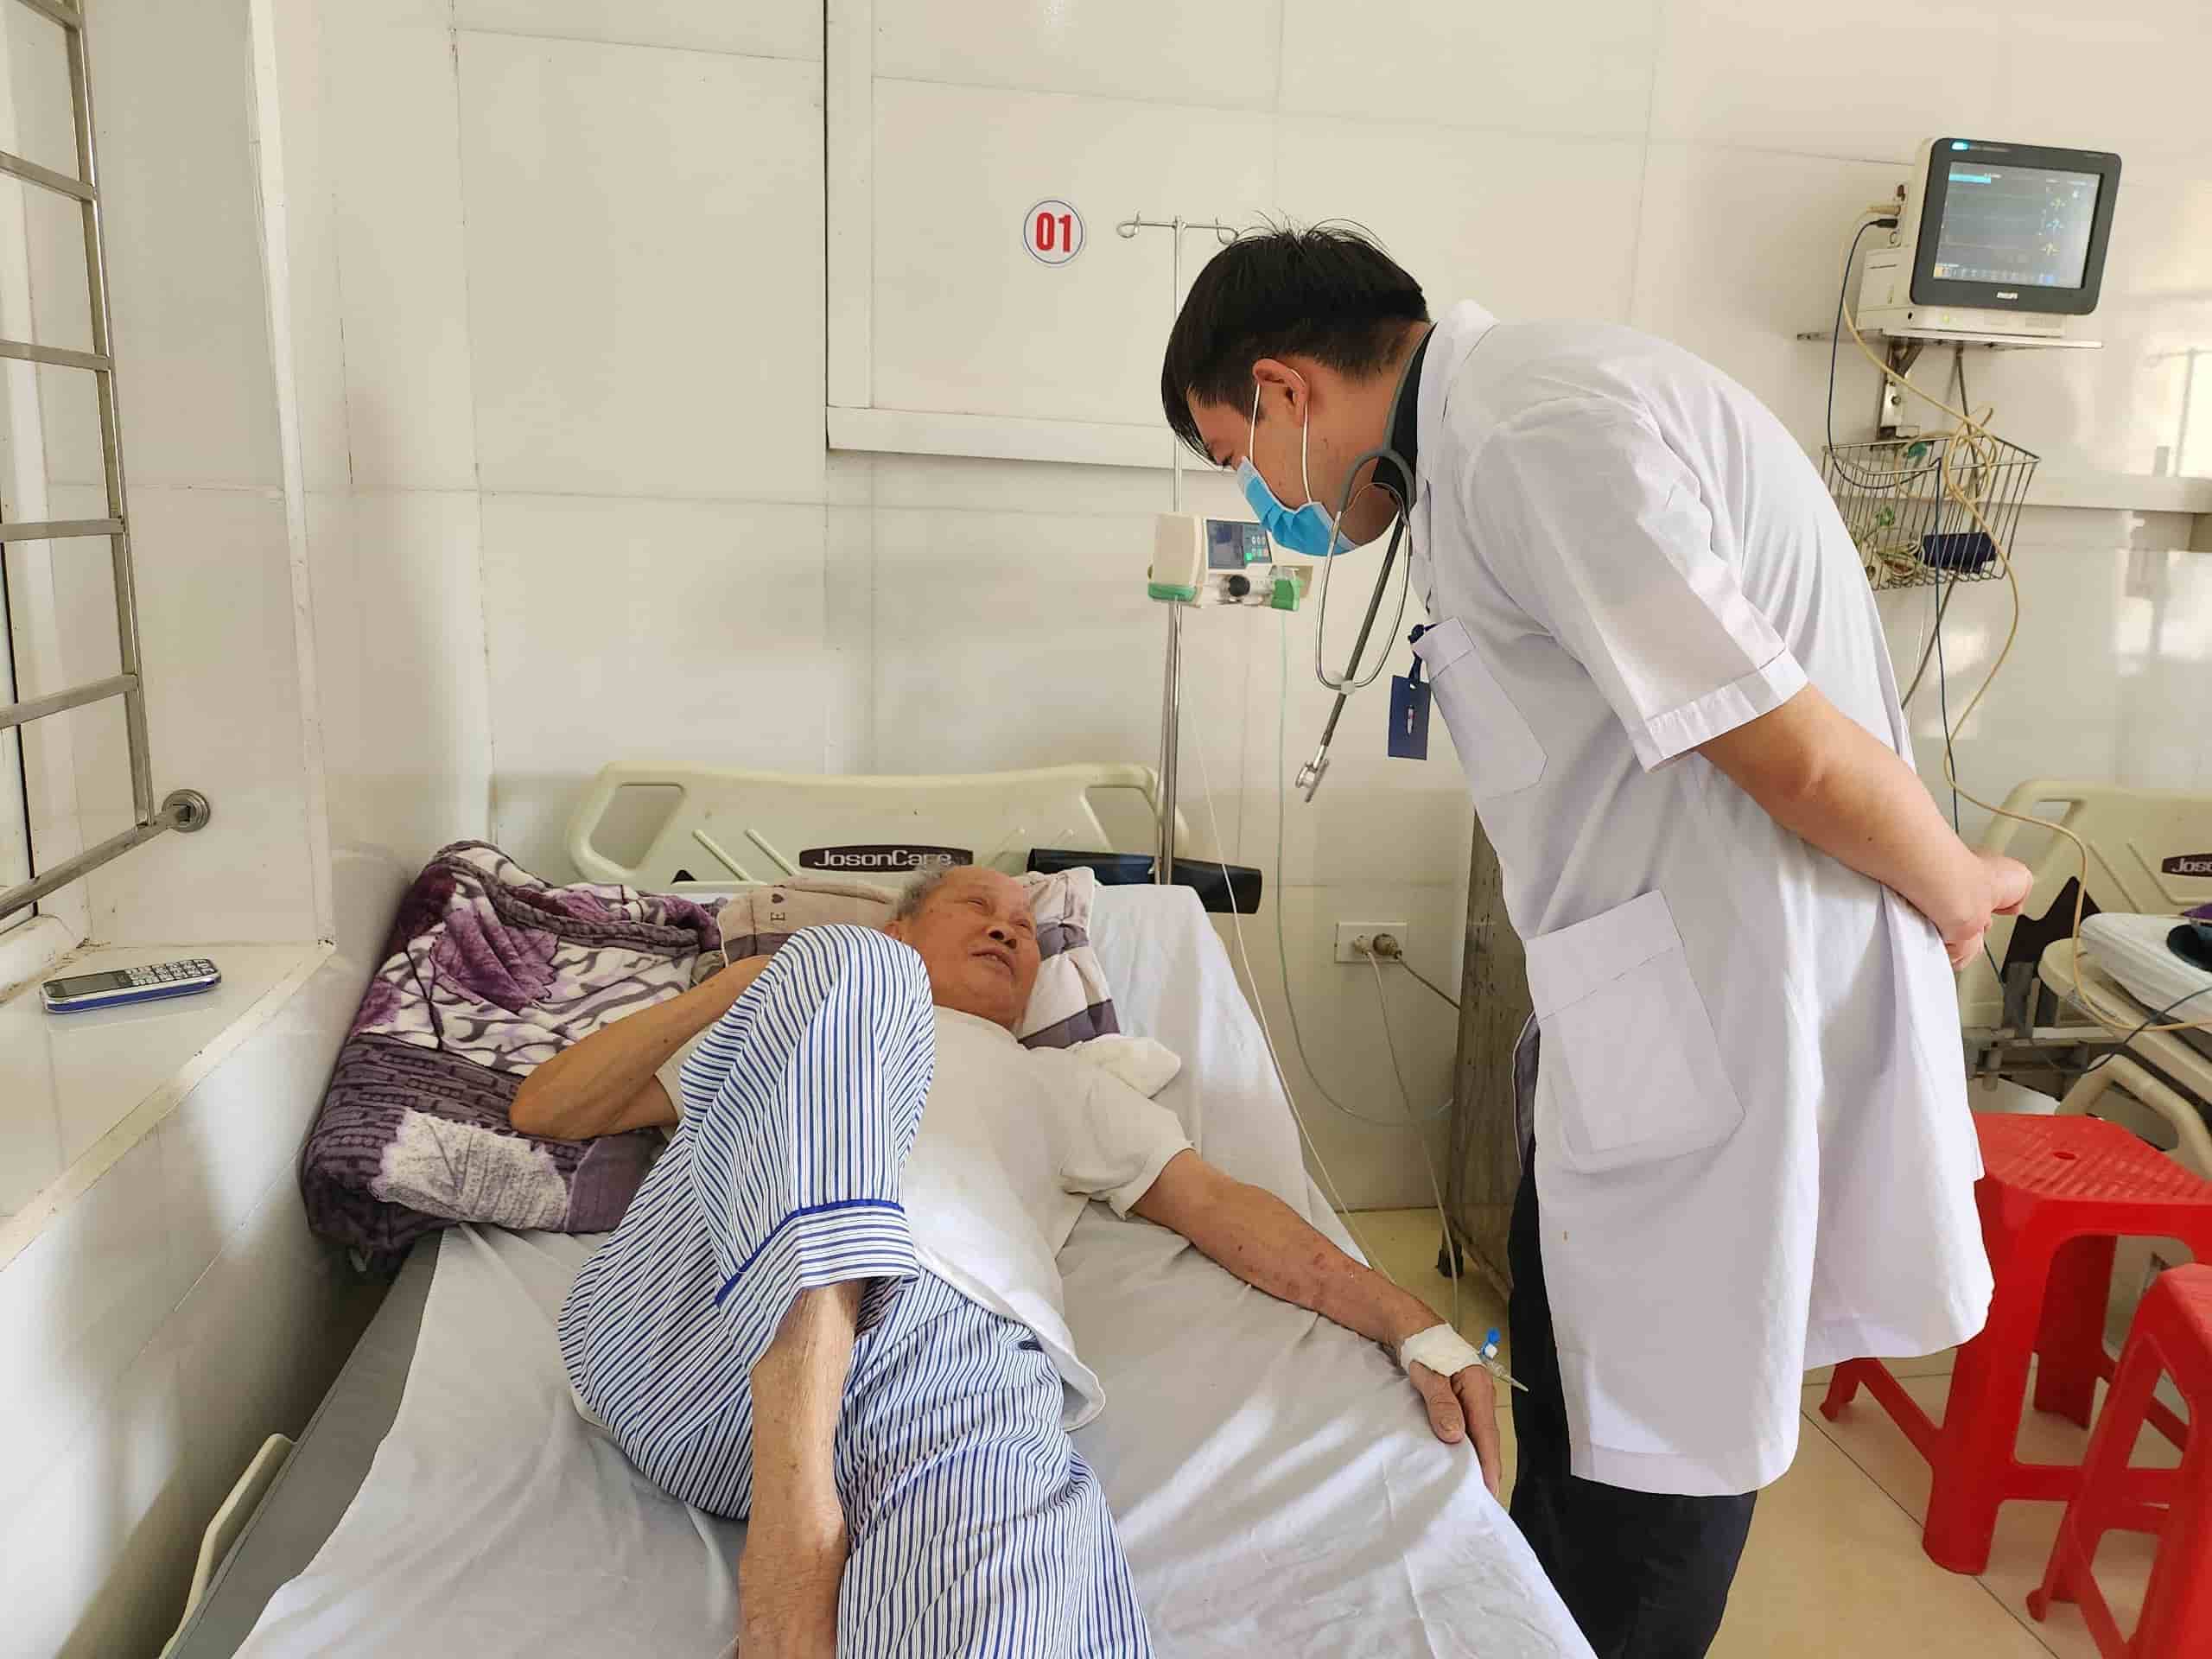 Những cán bộ, nhân viên tại Bệnh viện Đa khoa huyện Nho Quan (Ninh Bình) vẫn đi làm bình thường và hoàn thành nhiệm vụ được giao nhưng gần 4 tháng nay chưa nhận được đồng lương nào. Ảnh: Nguyễn Trường